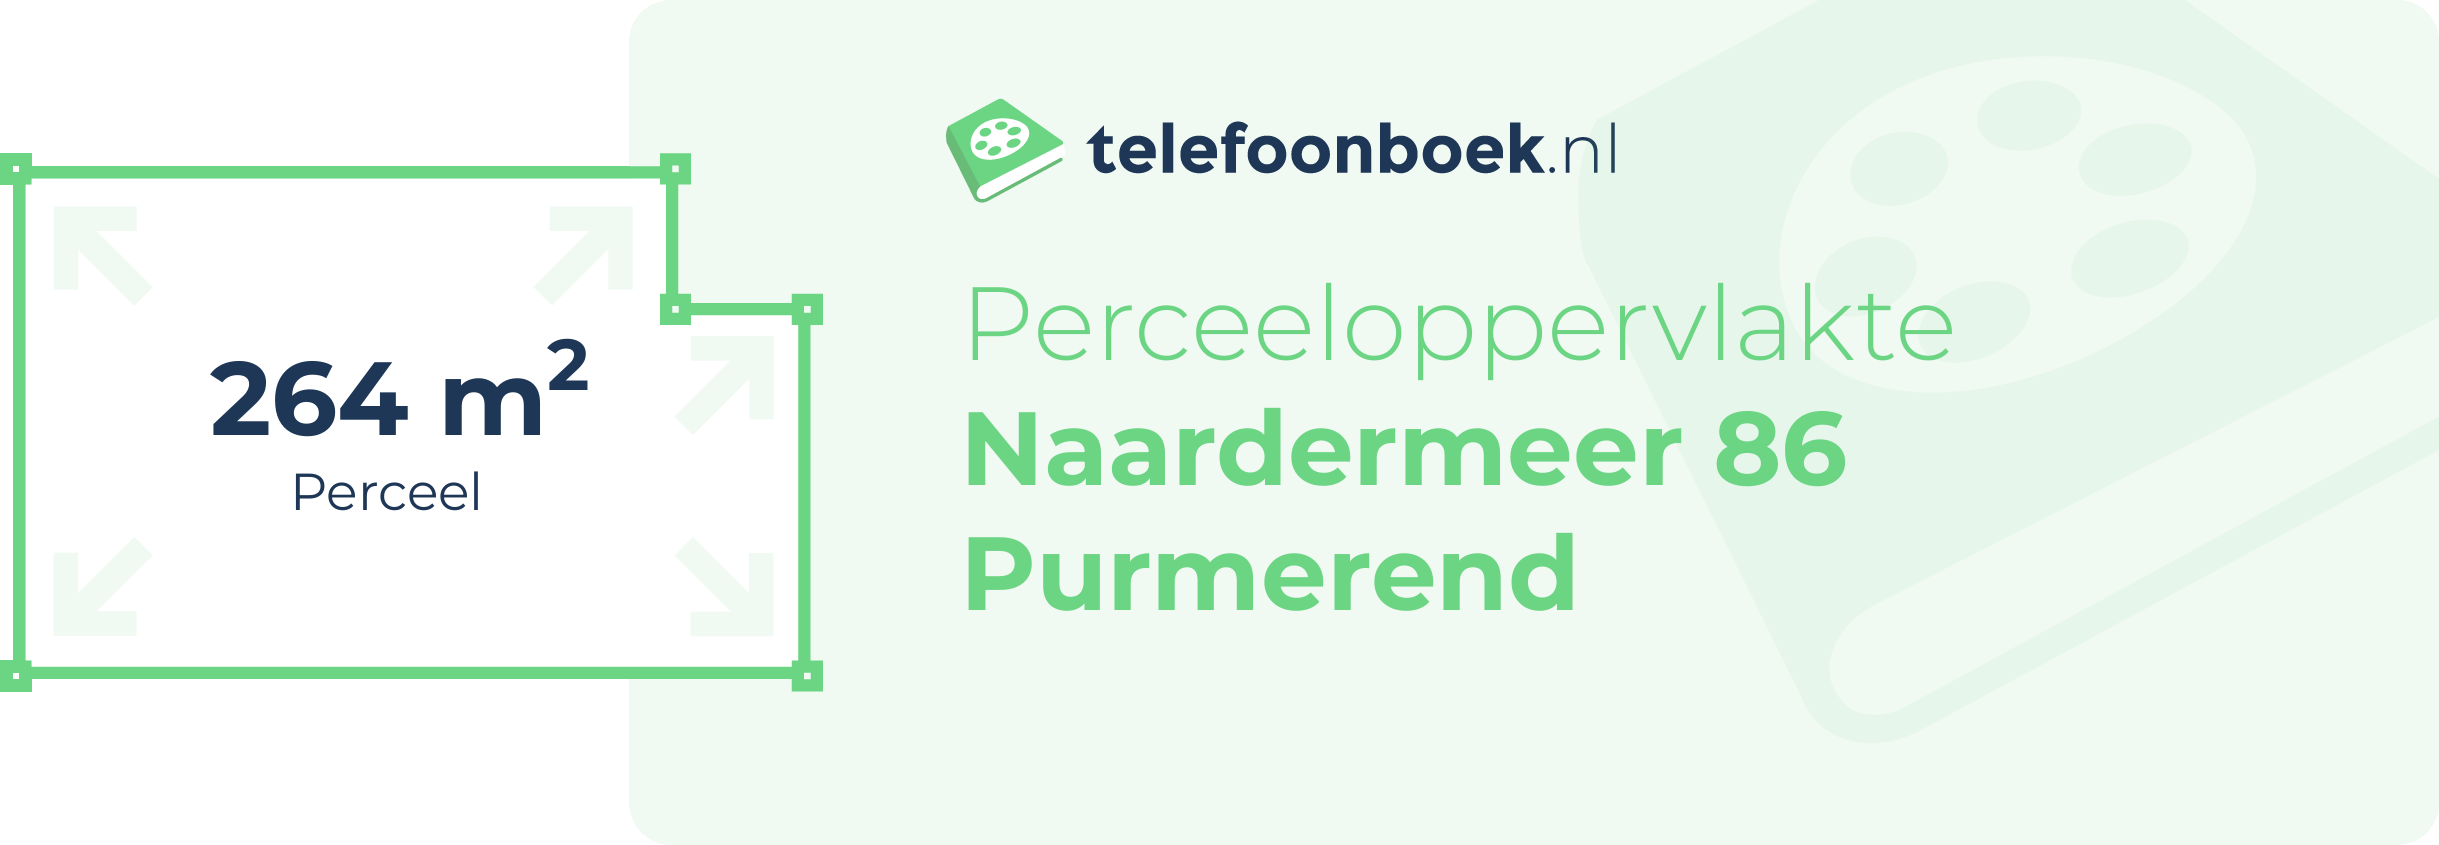 Perceeloppervlakte Naardermeer 86 Purmerend